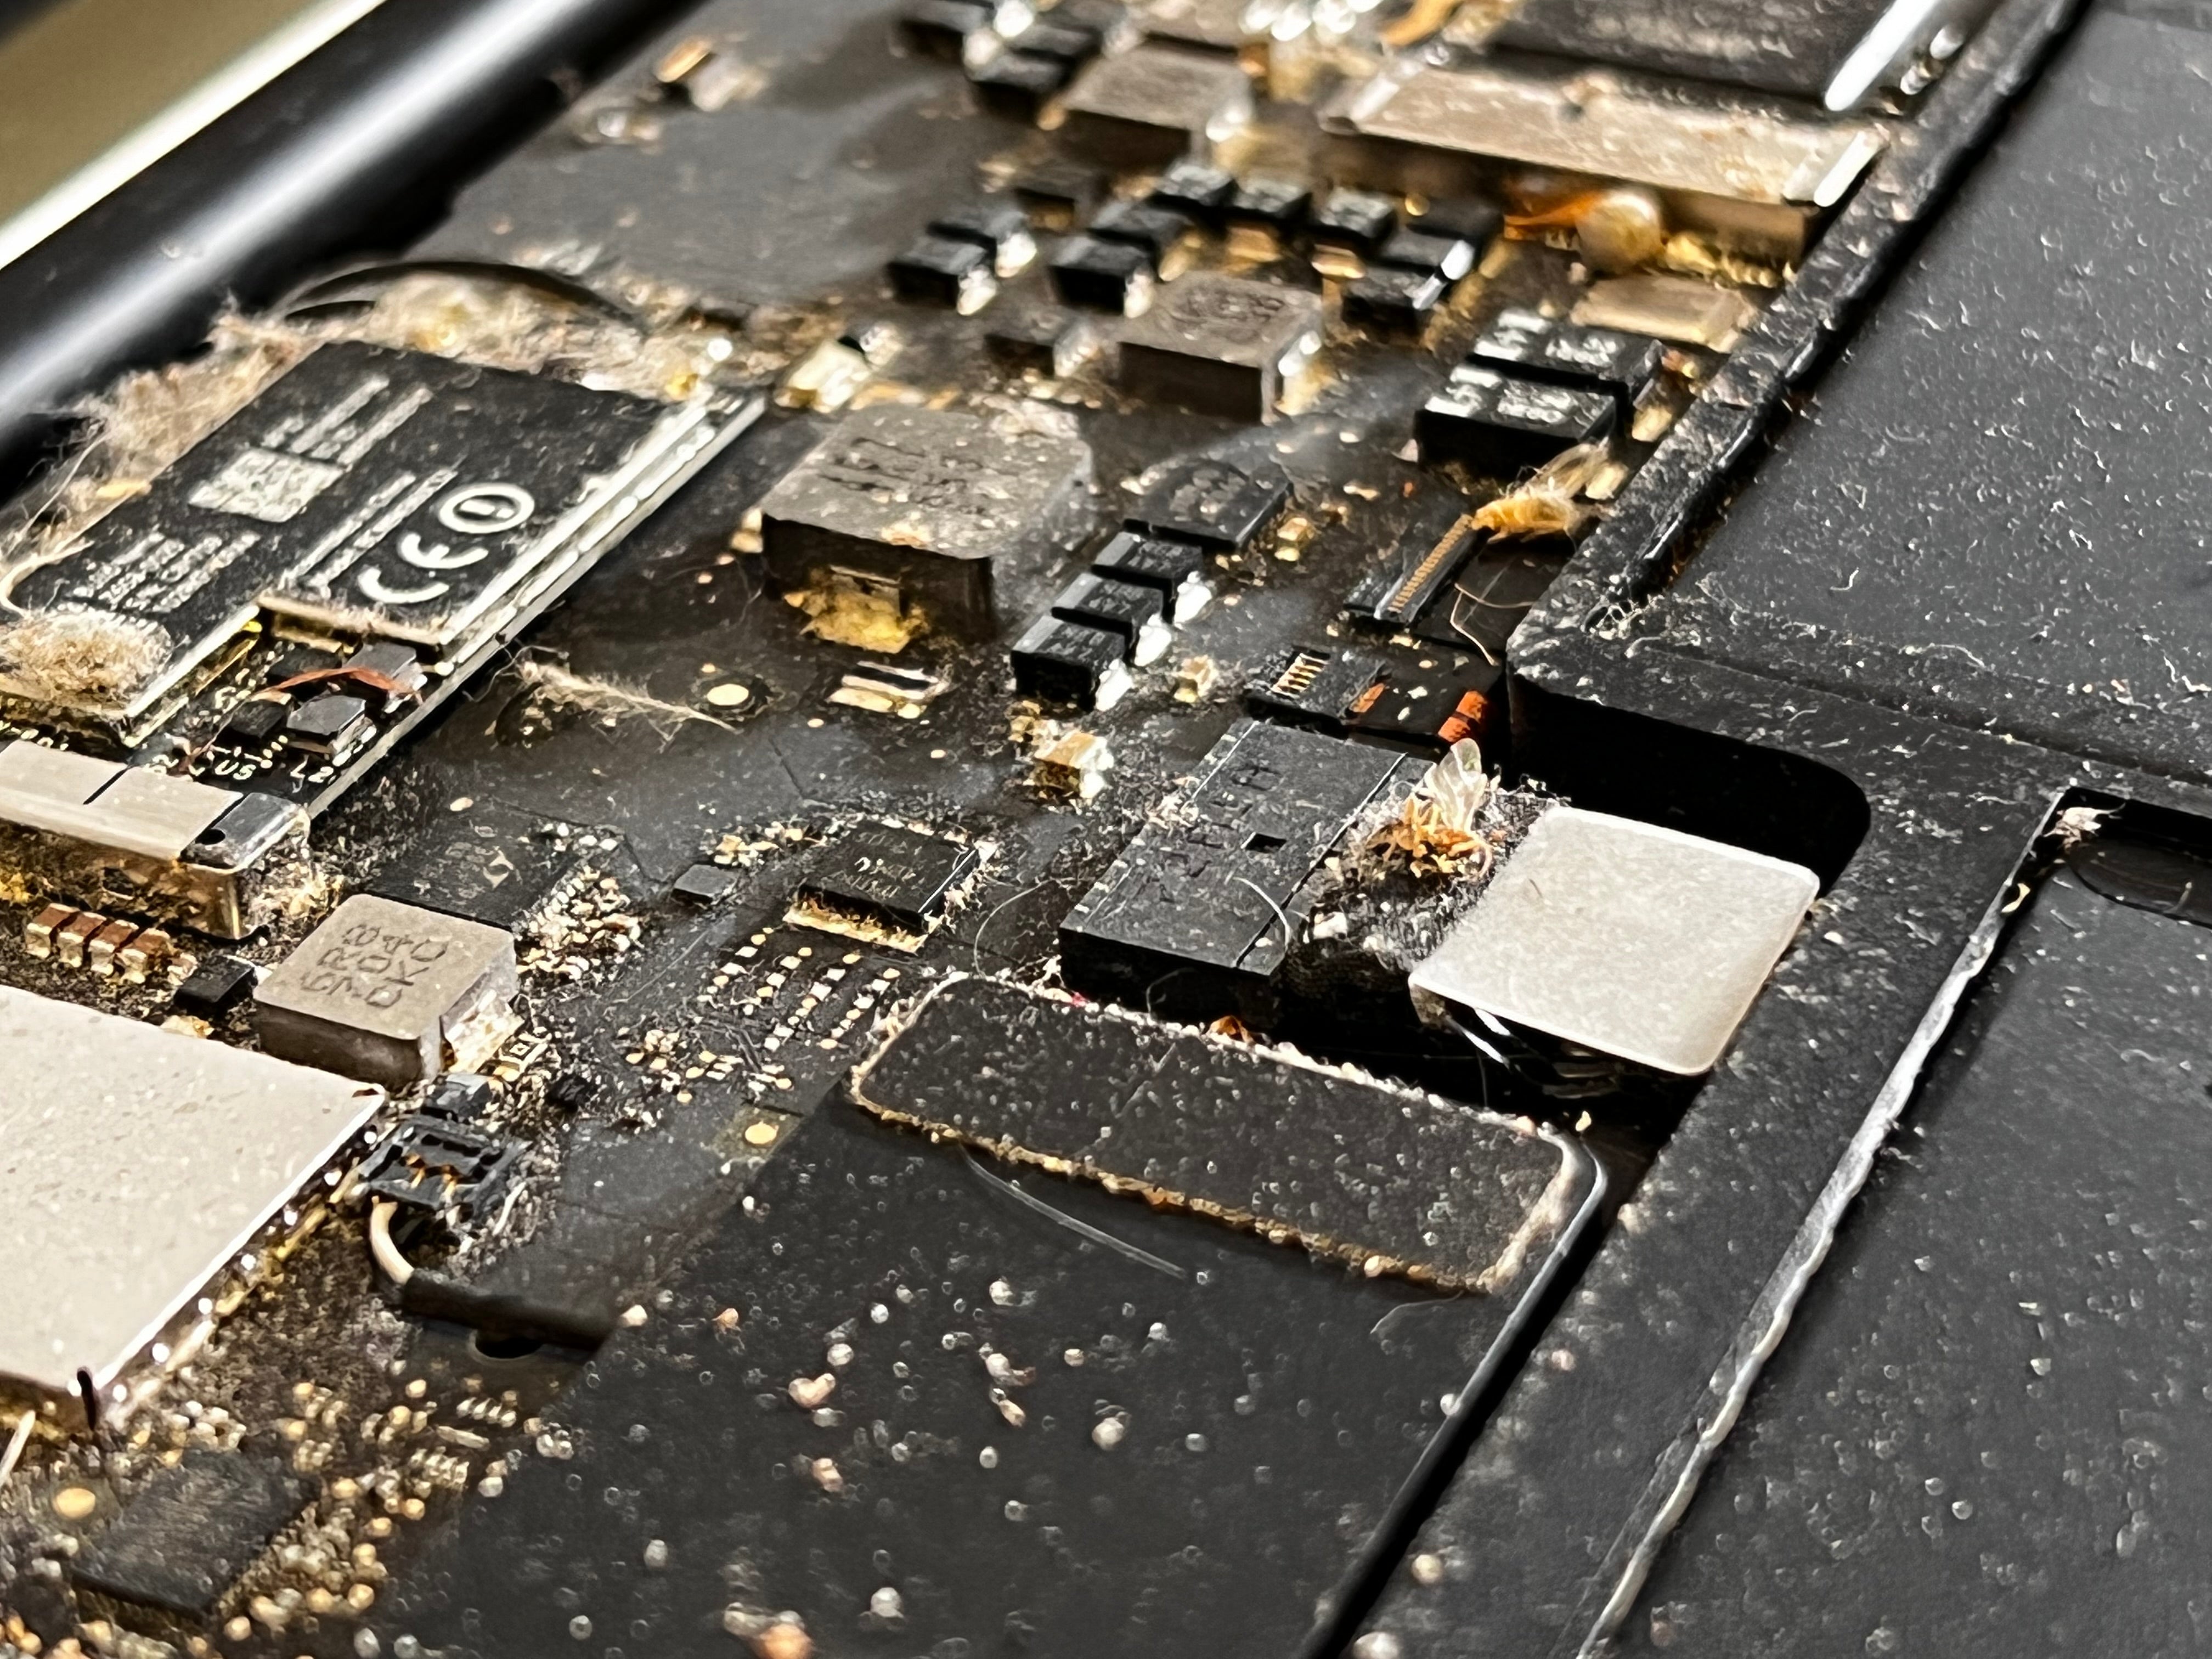 Beskidt macbook før billede